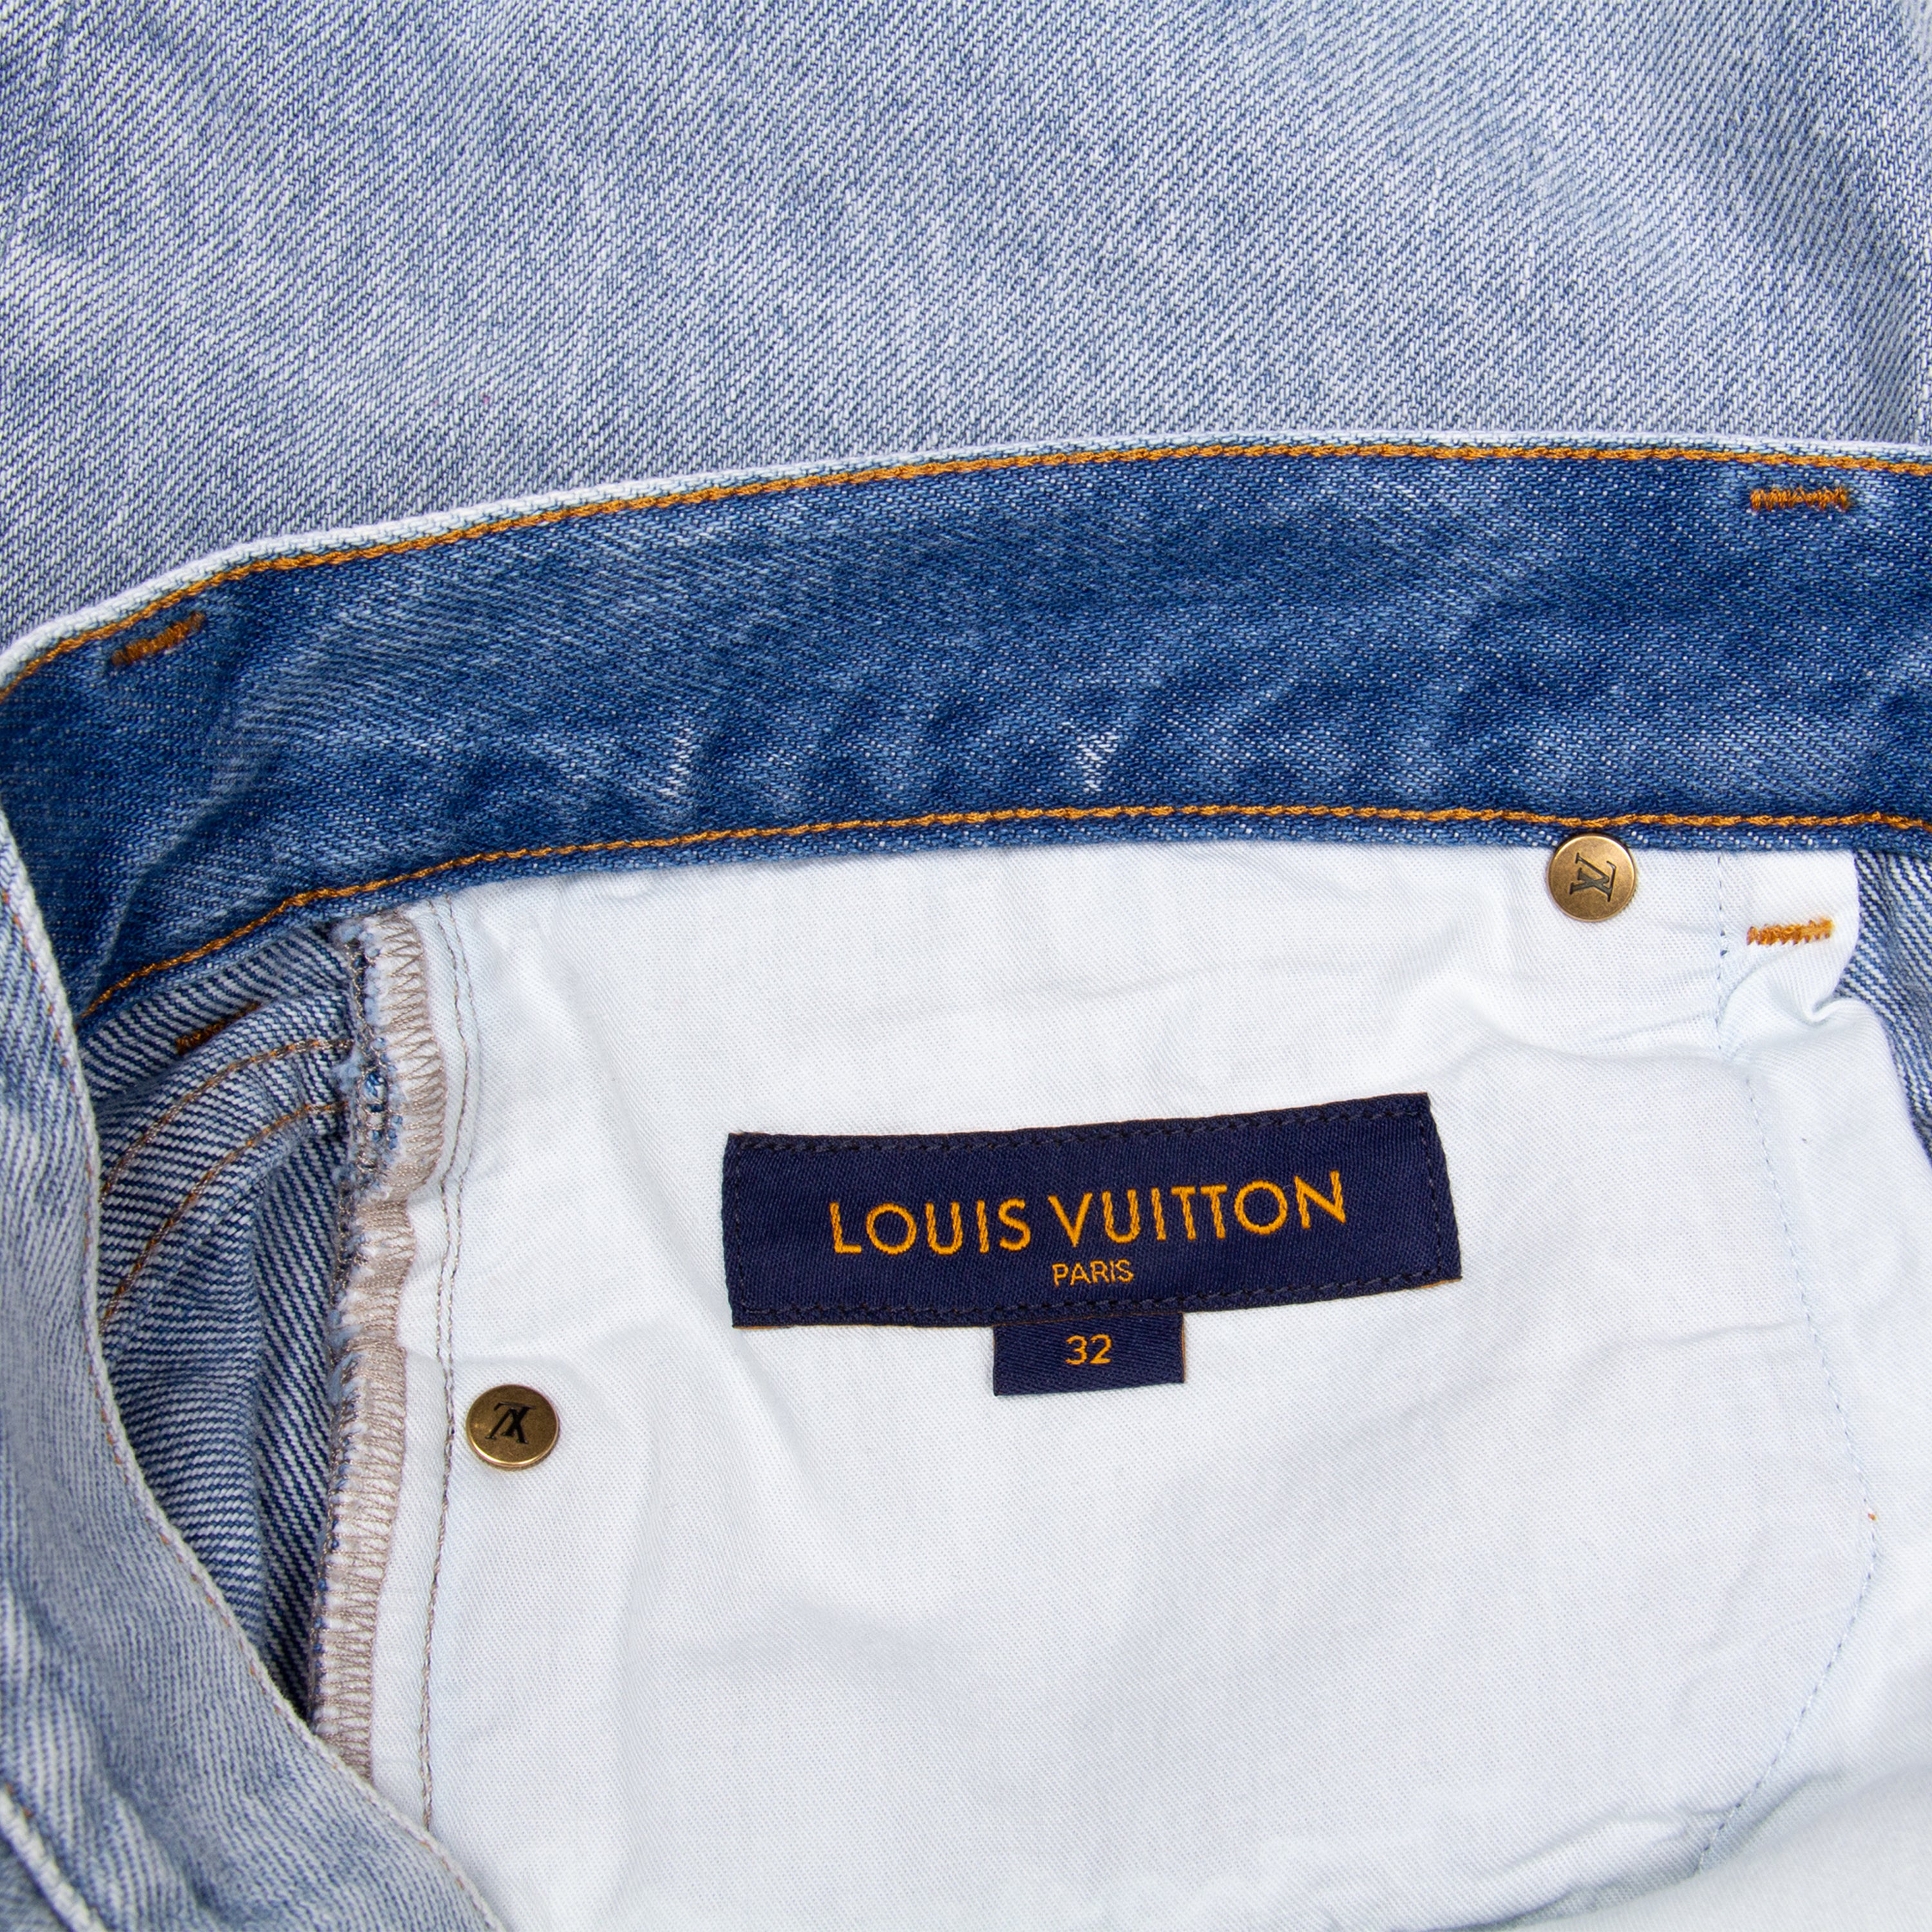 Louis Vuitton Light Blue Washed Denim Jeans